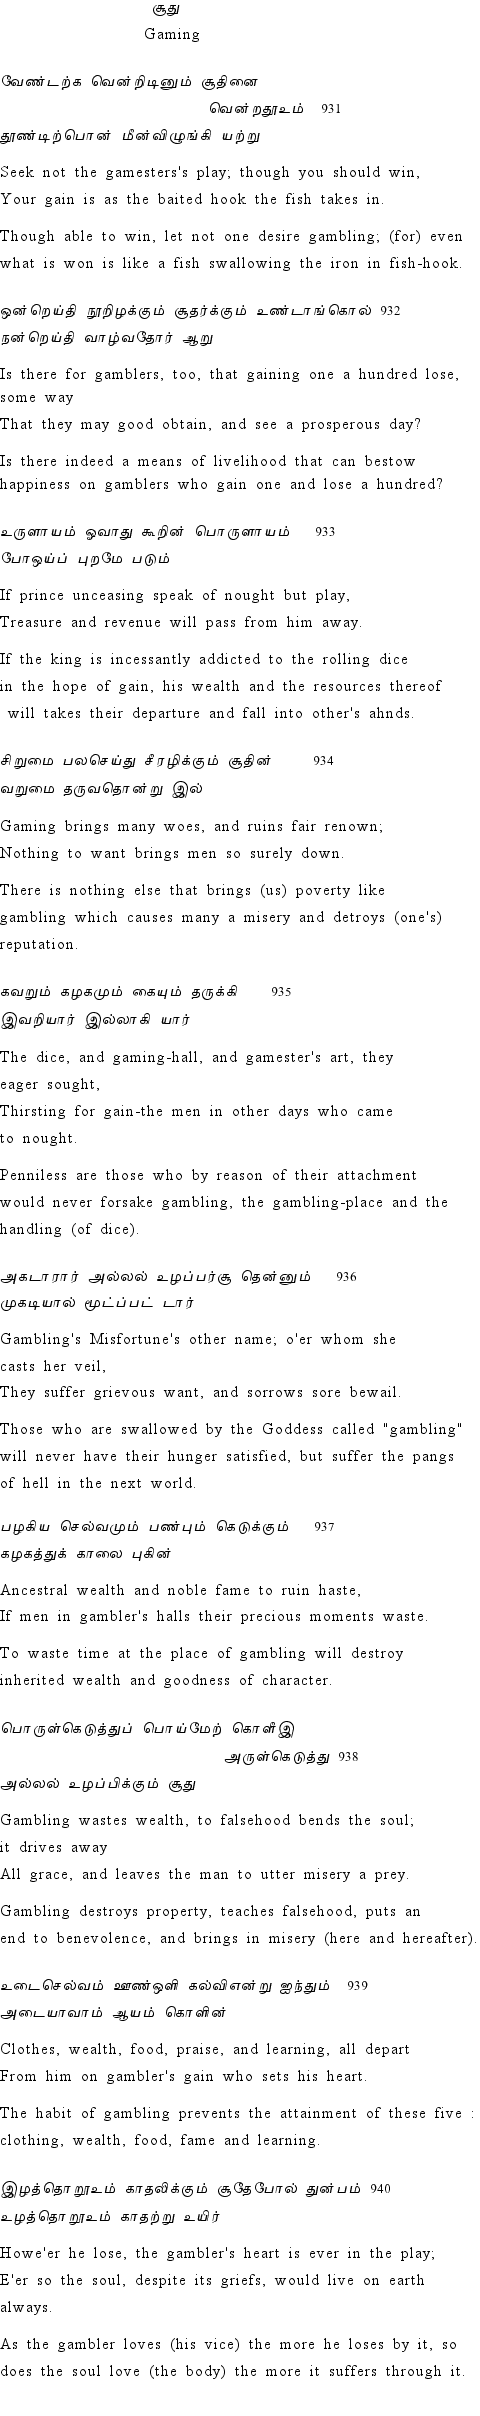 Text of Adhikaram 94